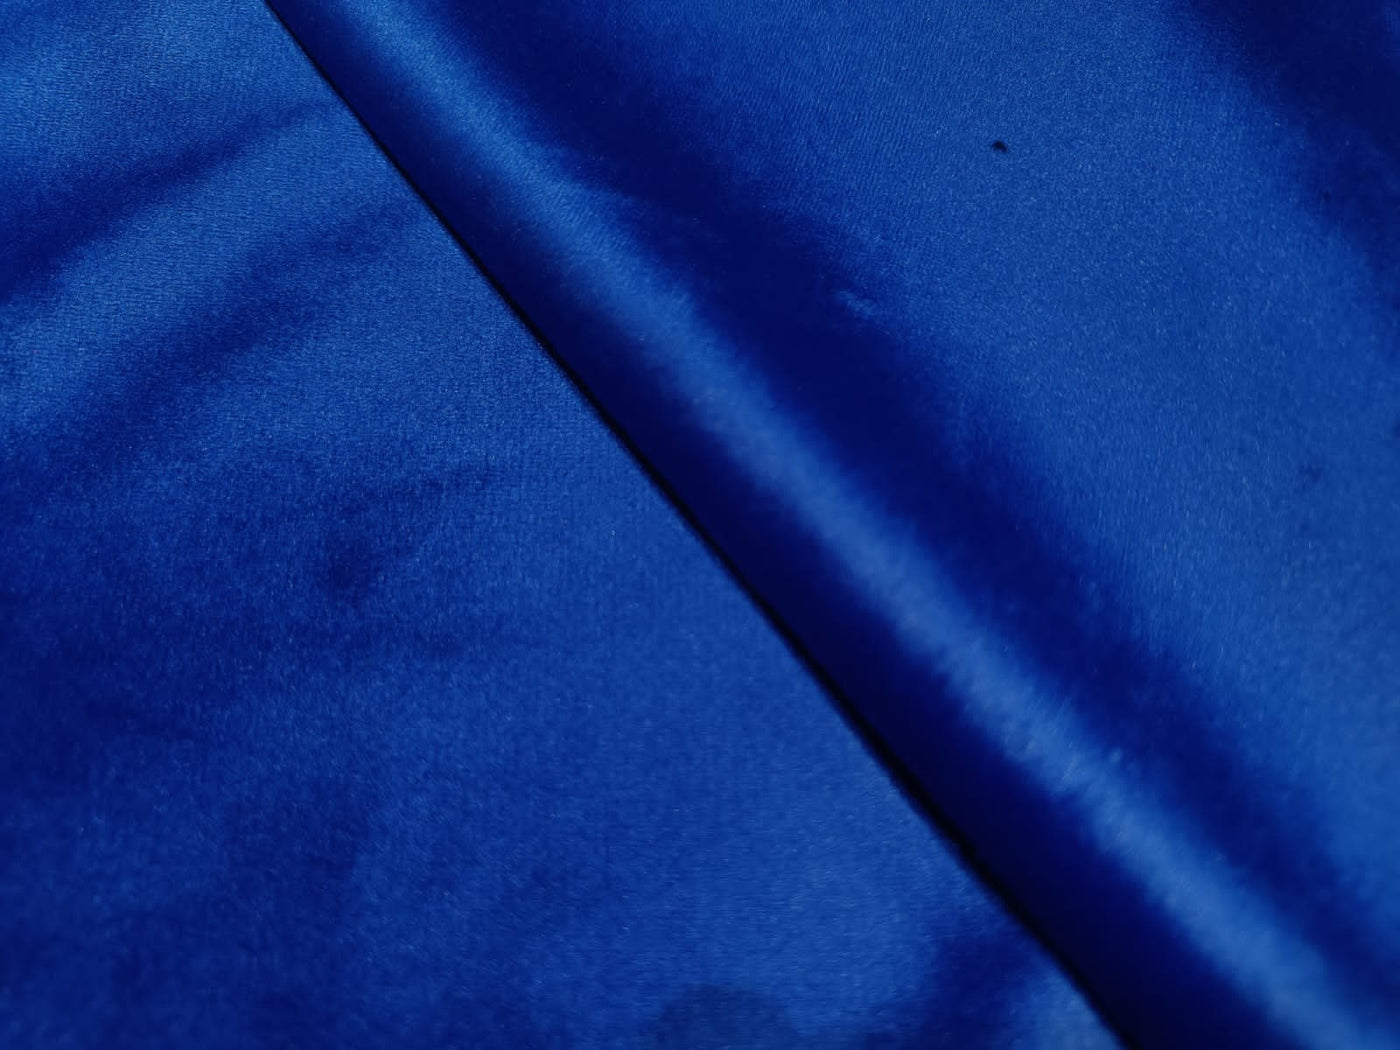 VELVET Lycra royal blue Fabric 58" wide [12109]